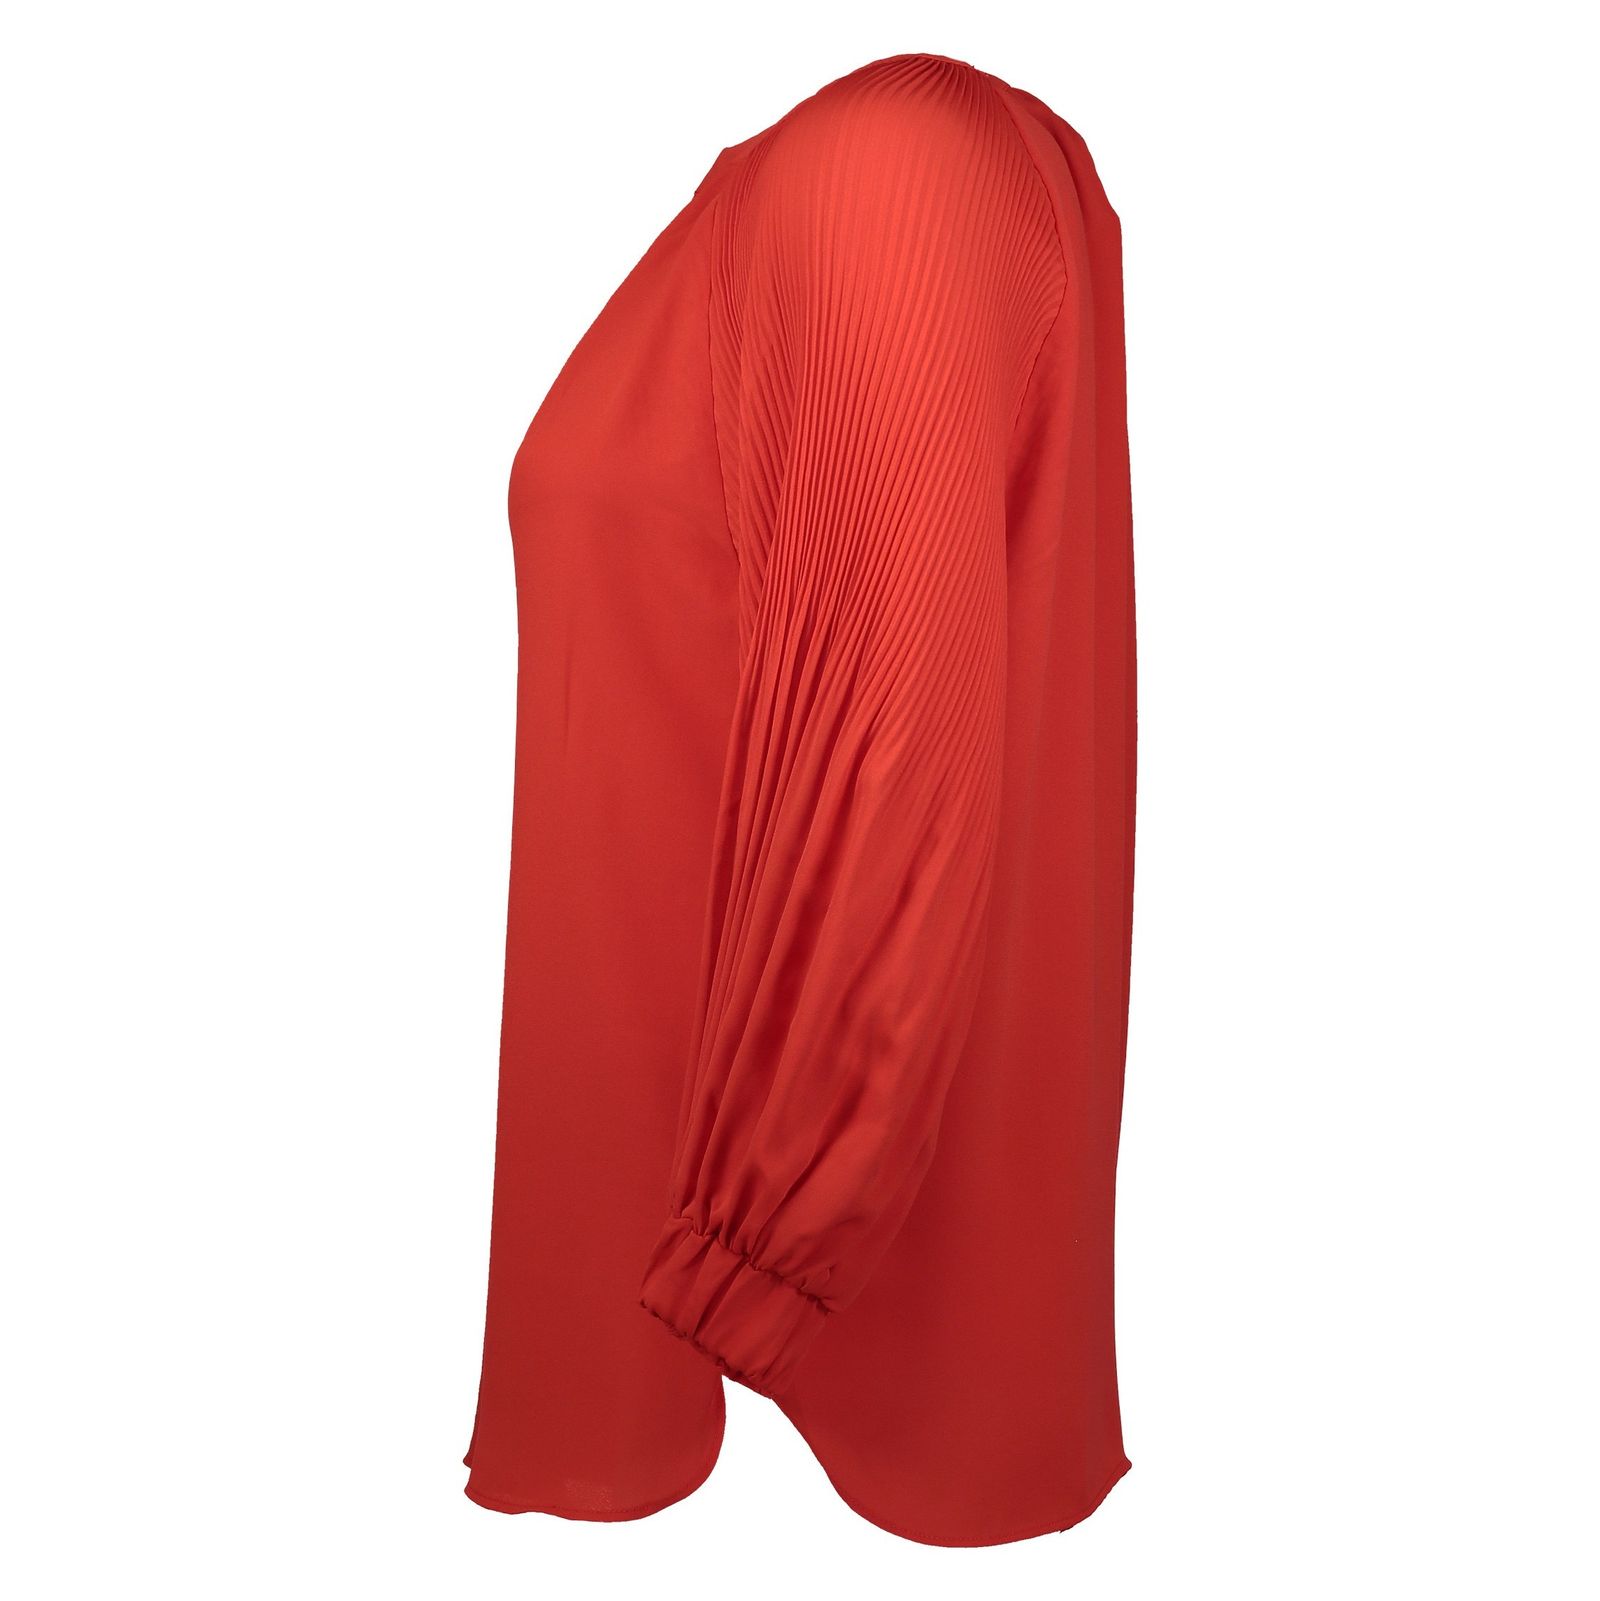 بلوز آستین بلند زنانه - پرینسیپلز - قرمز - 3